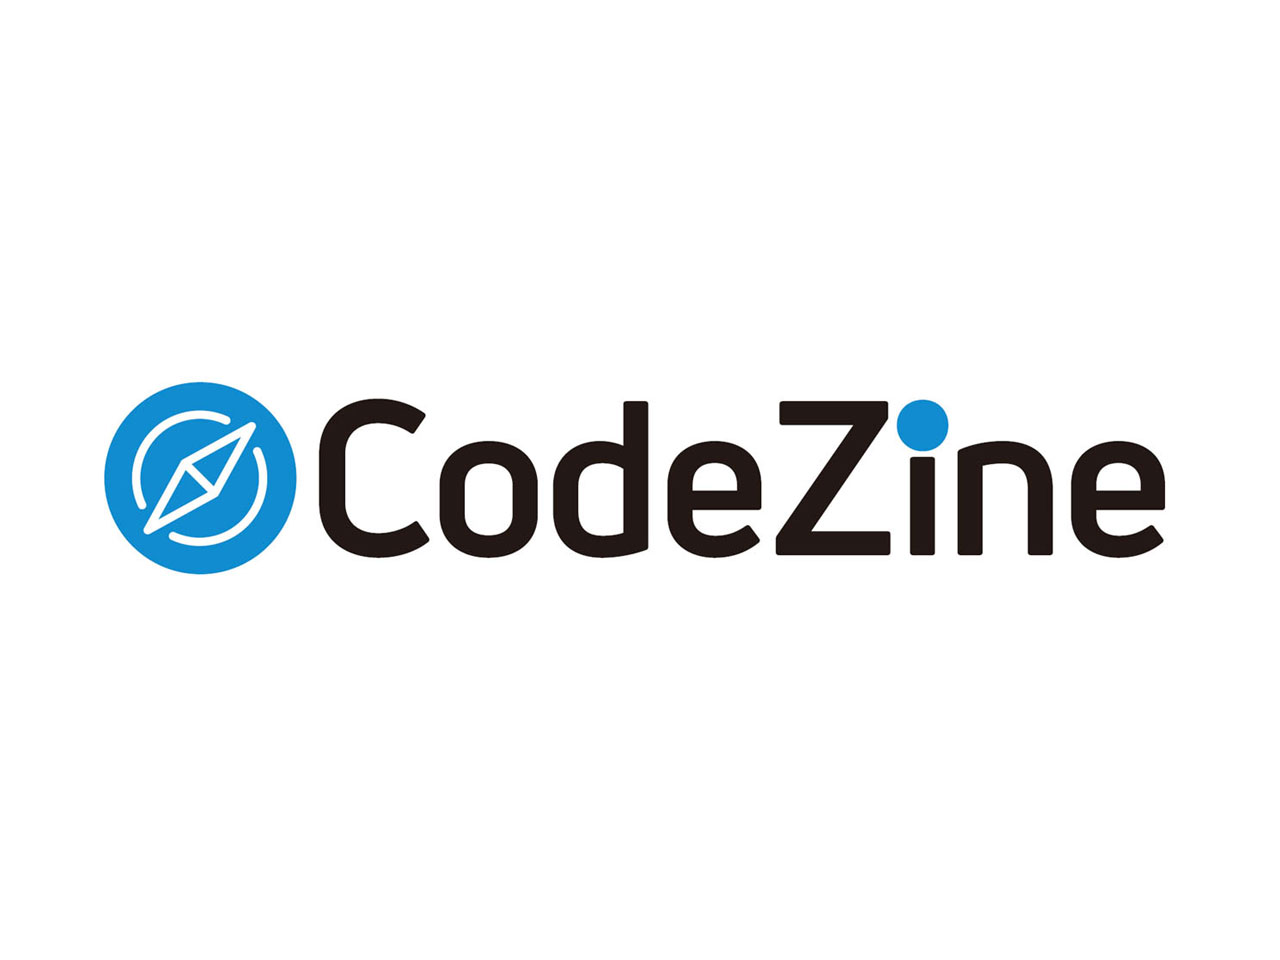 開発エンジニアの成長と課題解決に貢献するメディア『CodeZine』